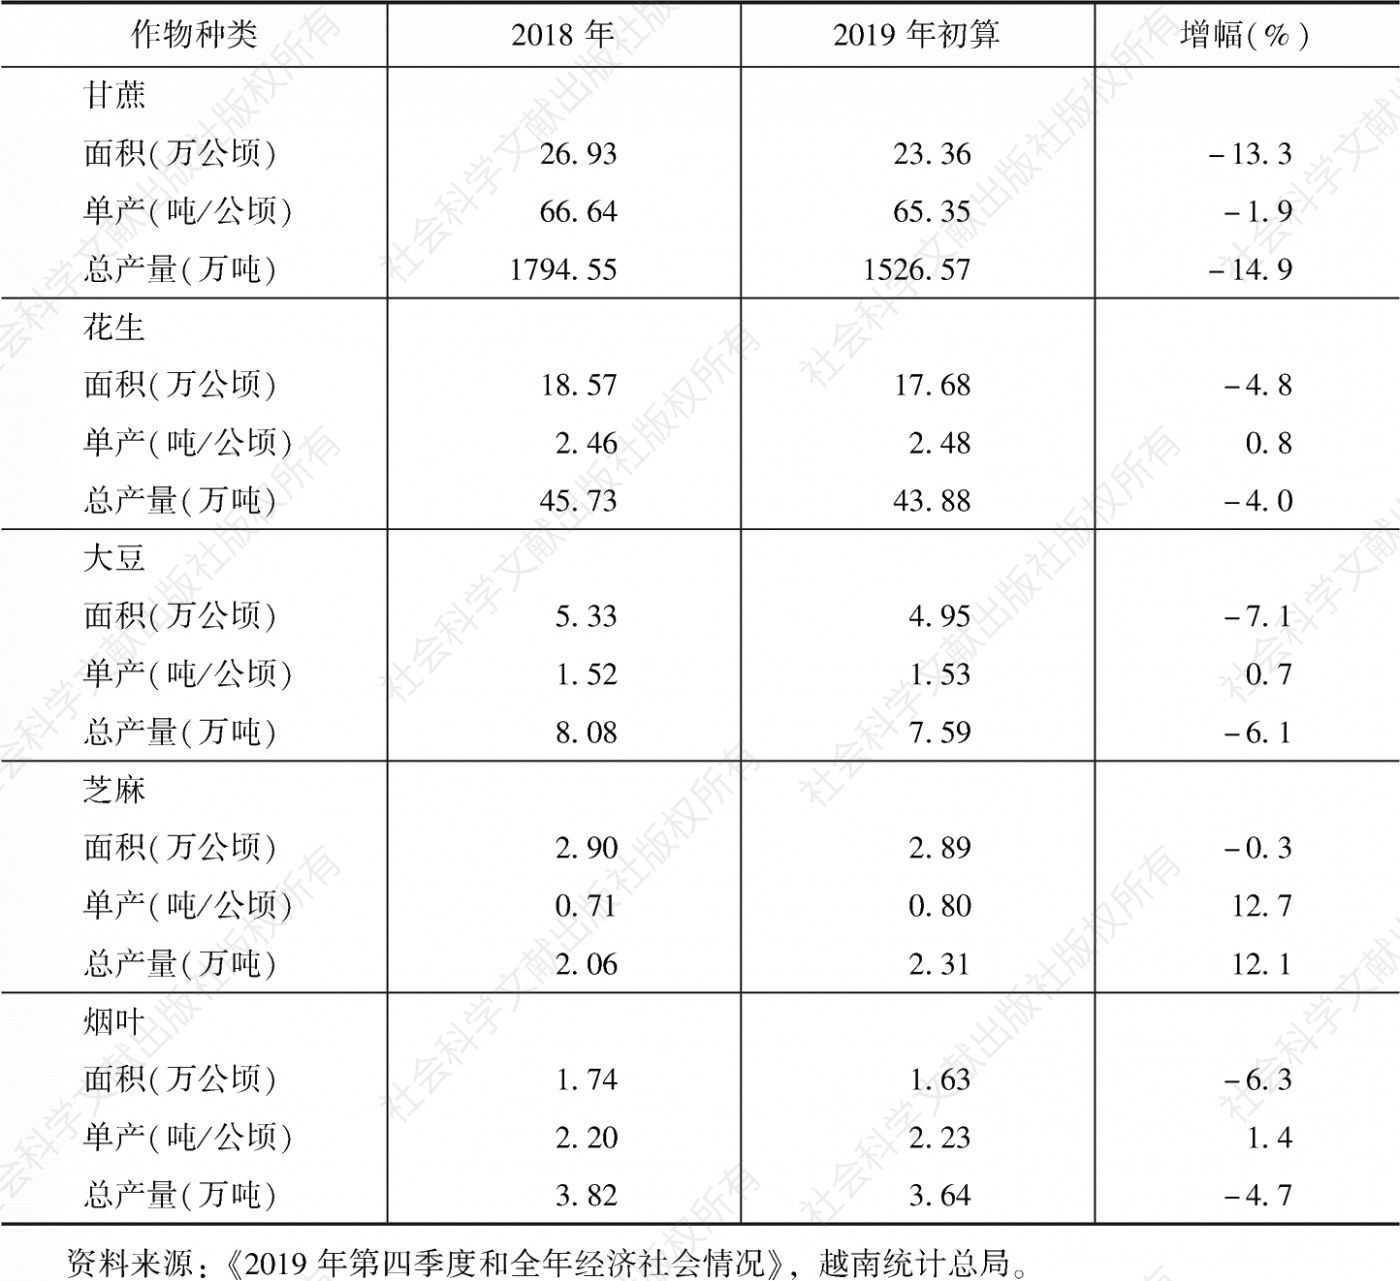 表3 2018～2019年越南部分一年生经济作物种植面积、单产和总产量